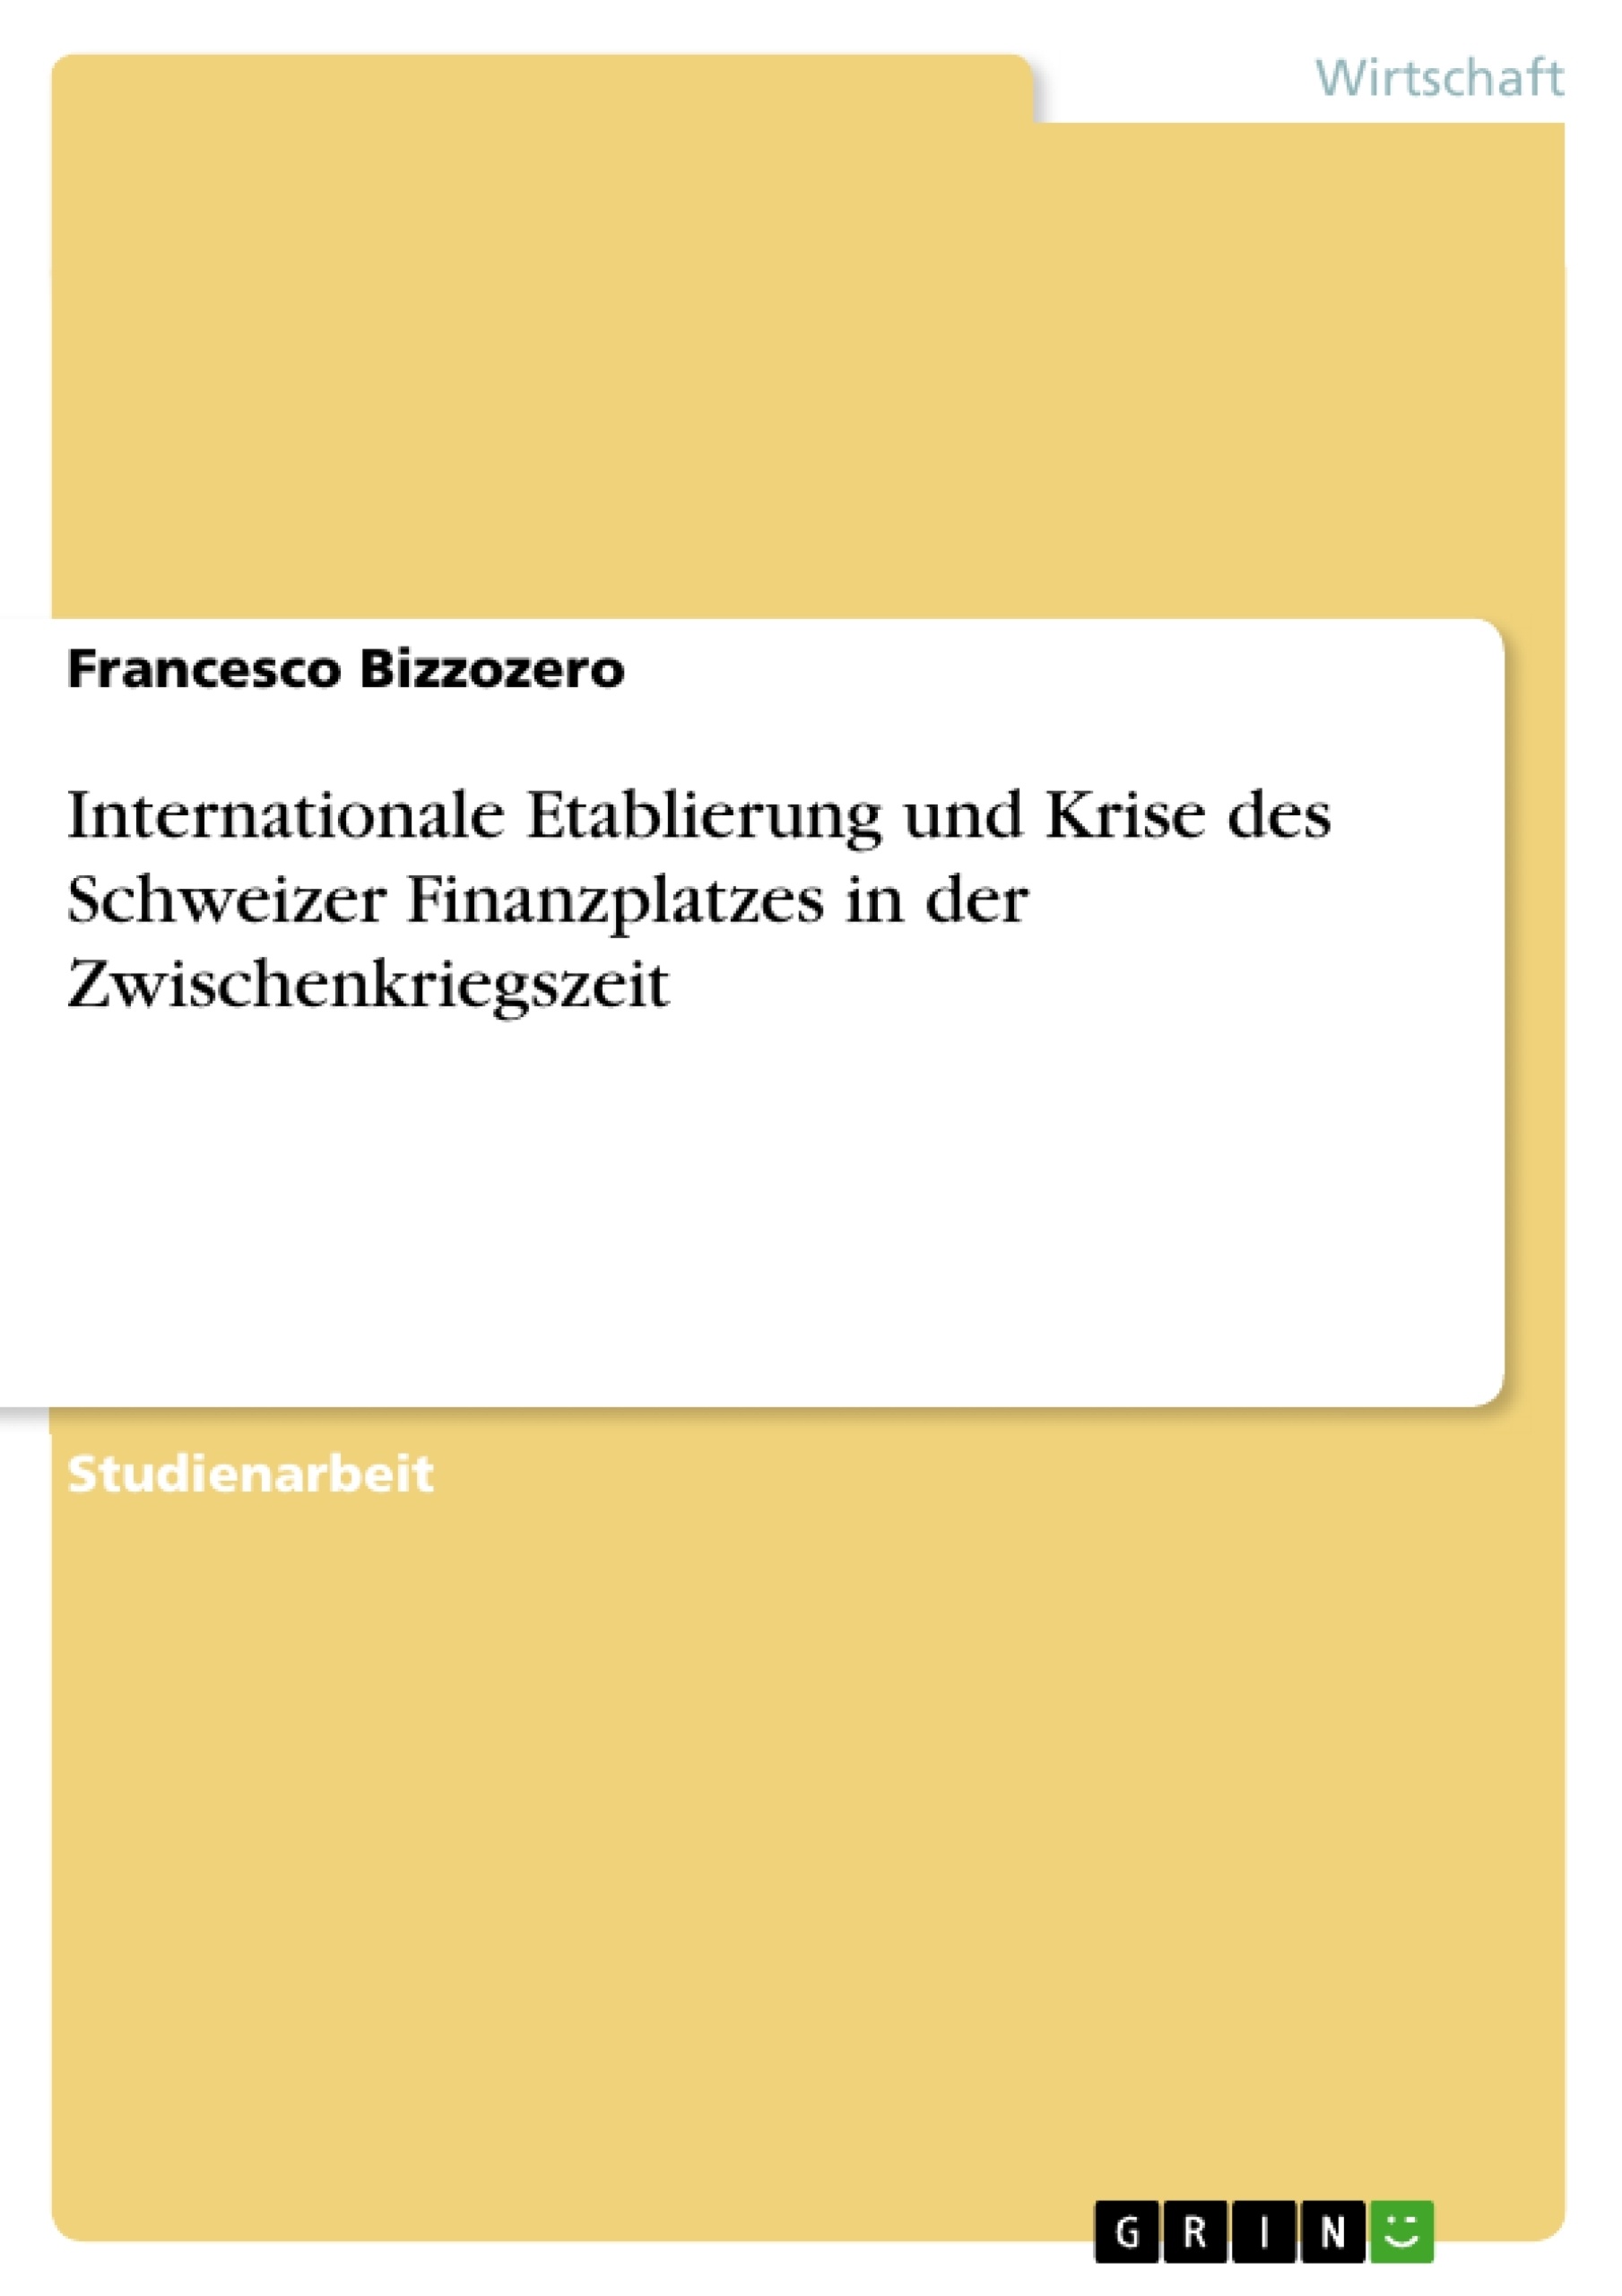 Título: Internationale Etablierung und Krise des Schweizer Finanzplatzes in der Zwischenkriegszeit